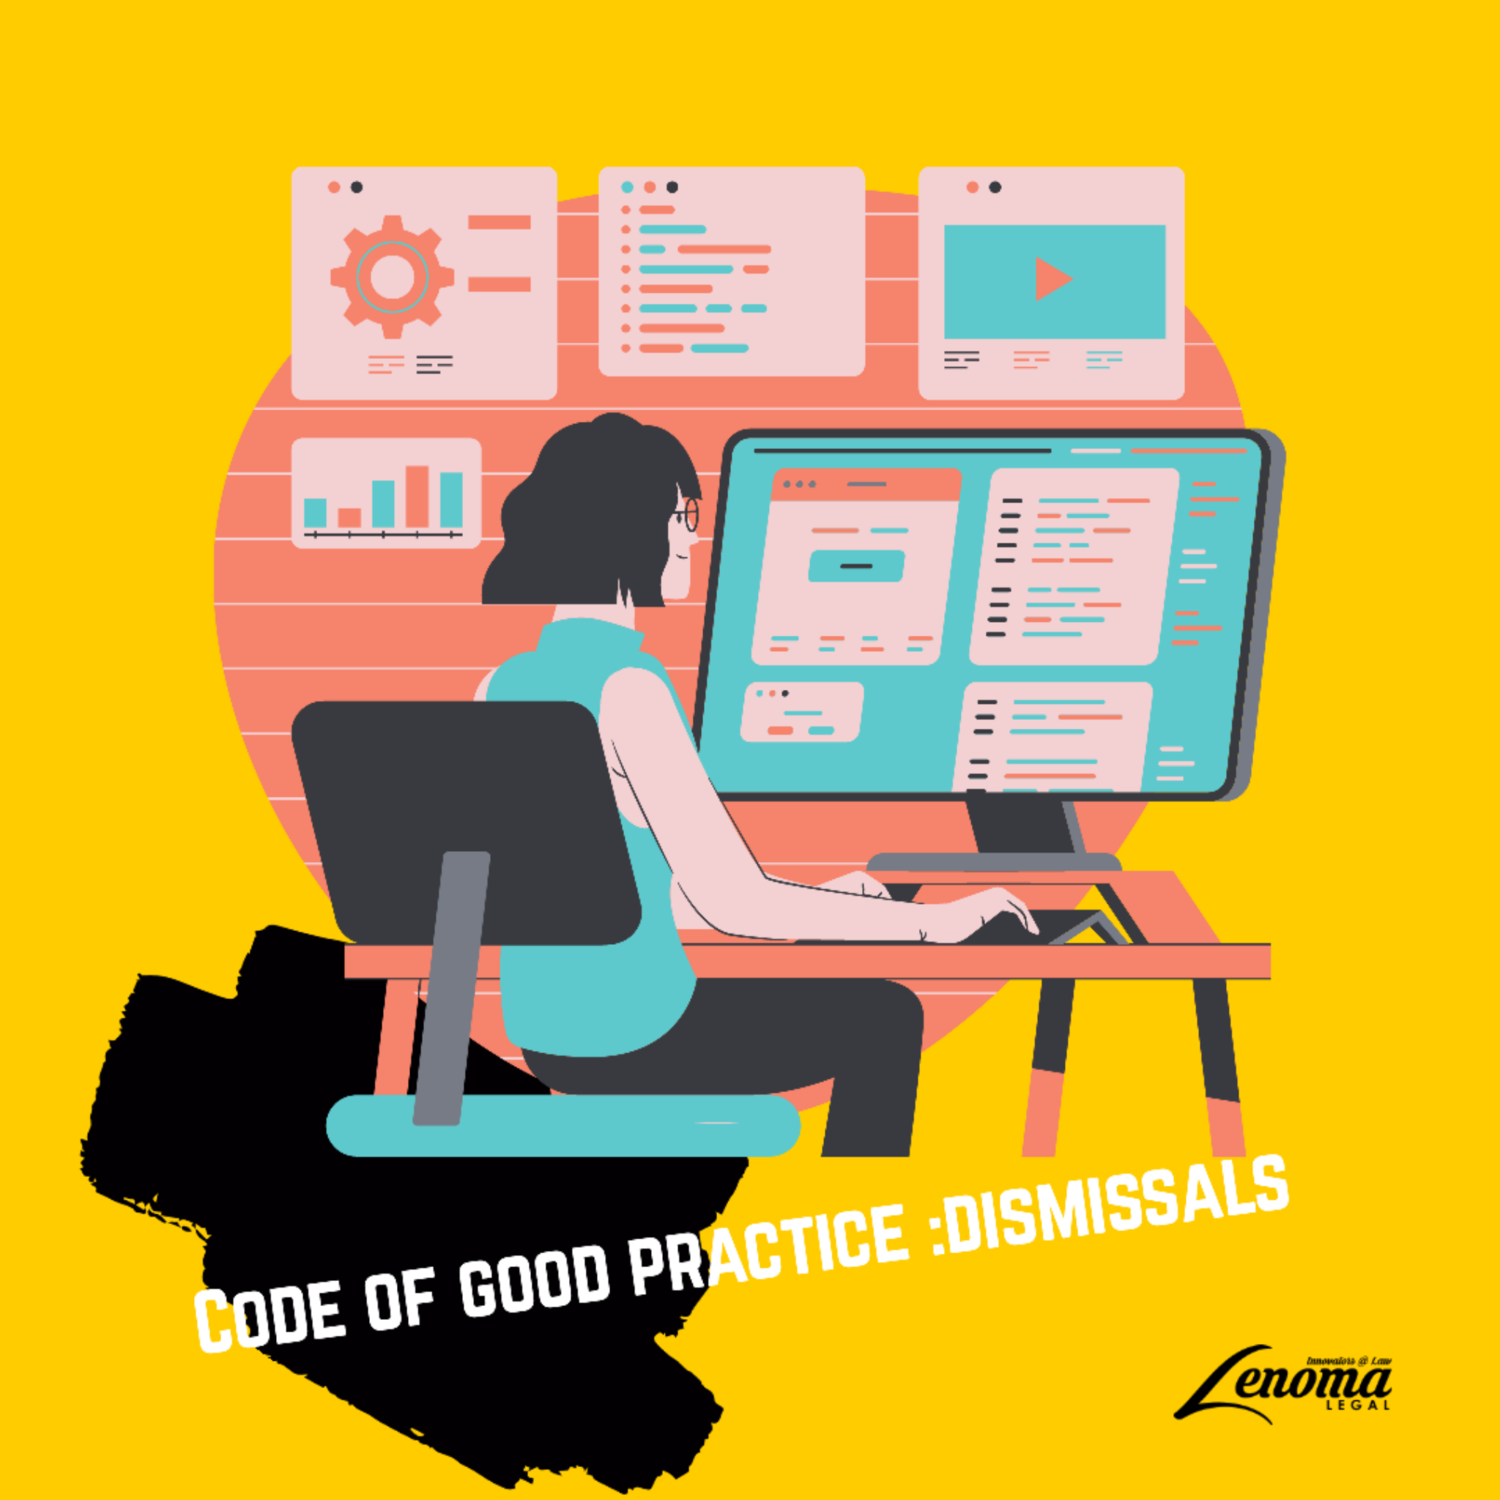 Code of good practice : dismissals